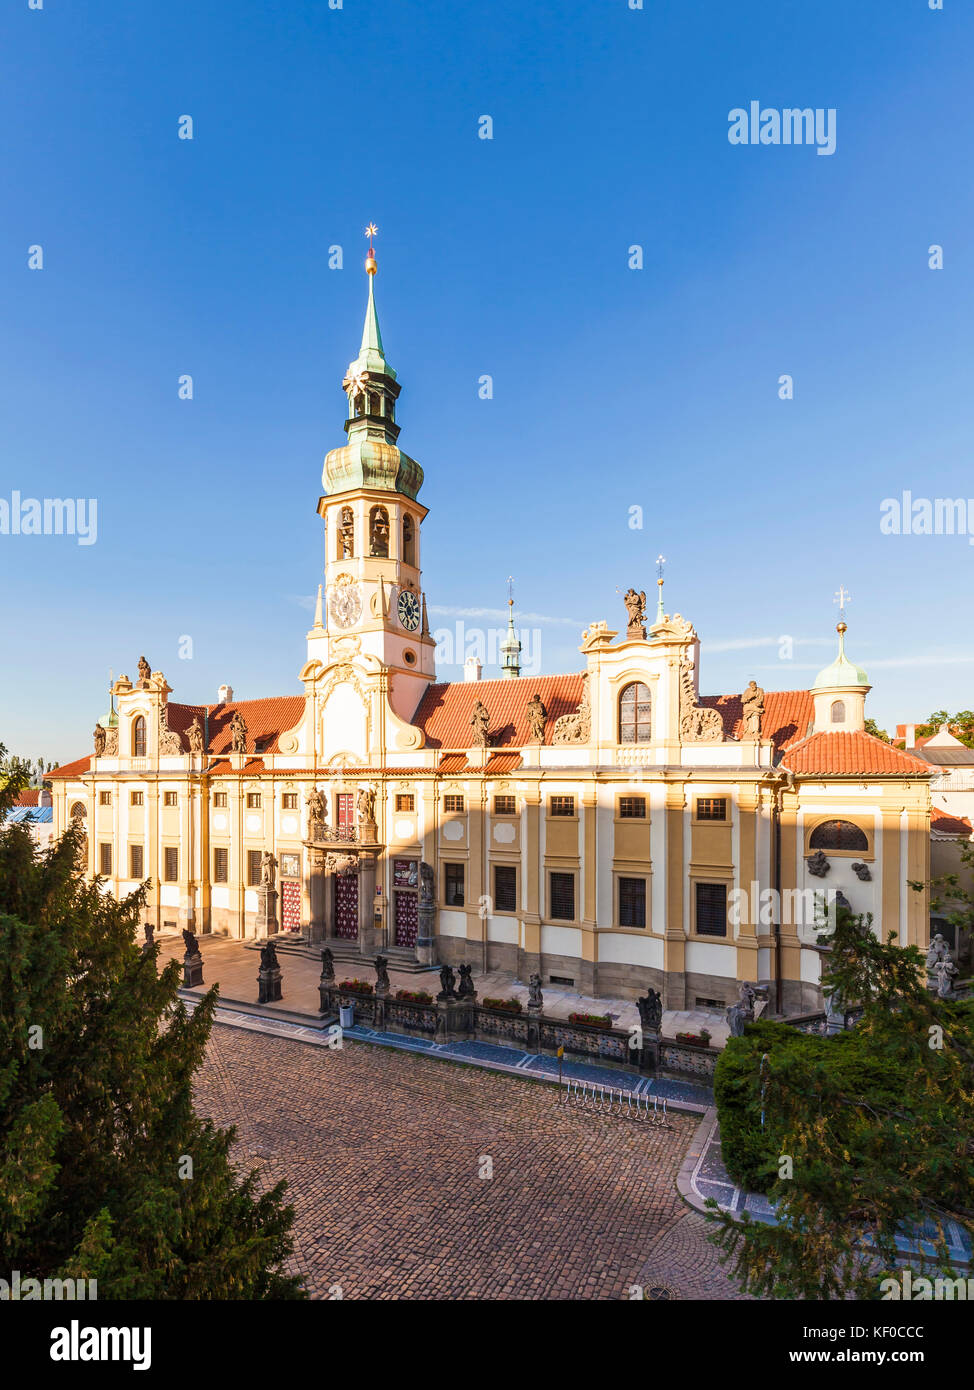 Tschechien, Prag, Hradschin, Loreto, Loretoheiligtum, Kapuzinerkloster, Wallfahrtsort Stock Photo